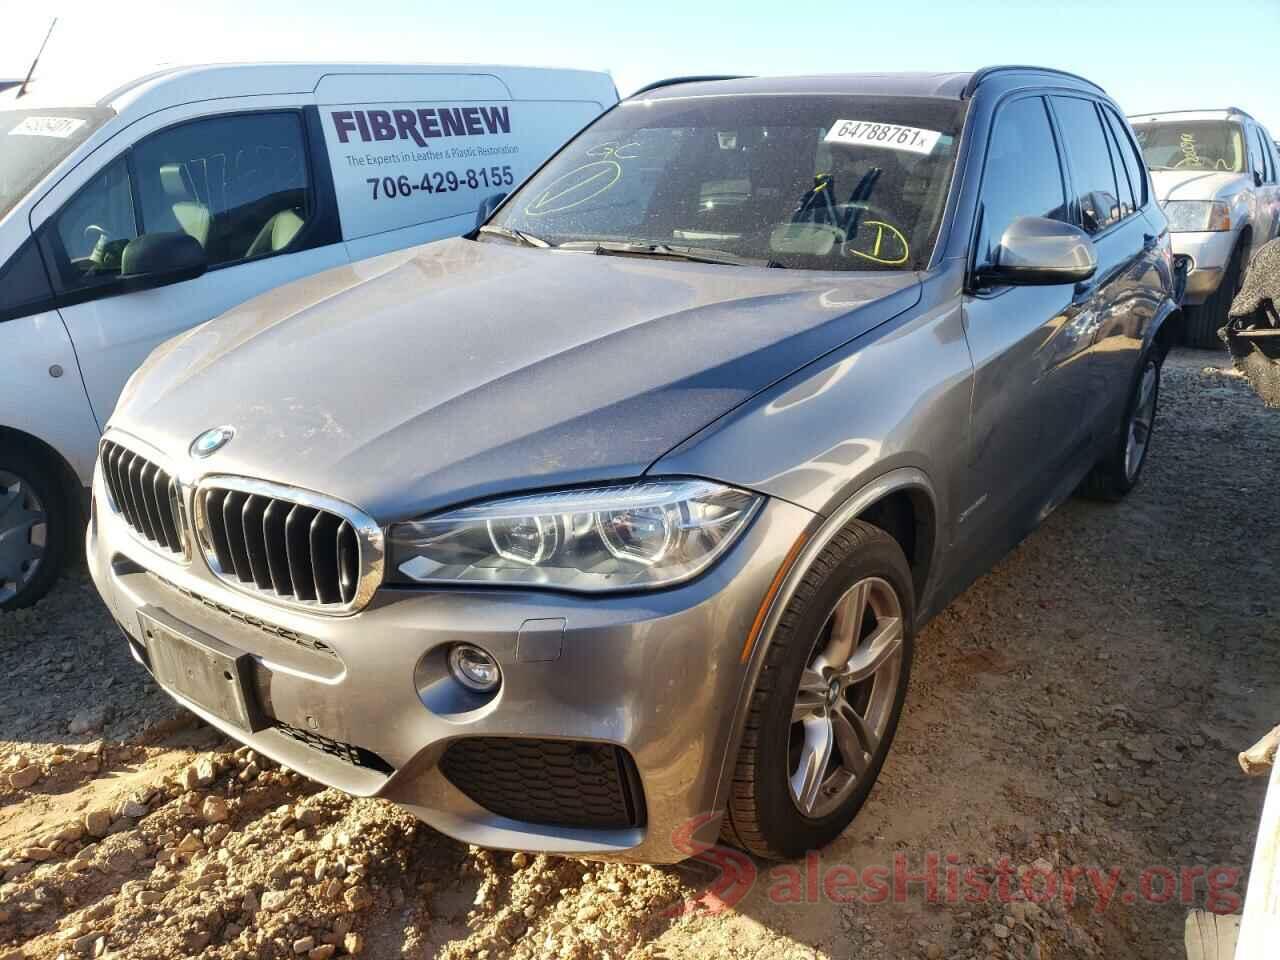 5UXKR0C52G0S88375 2016 BMW X5